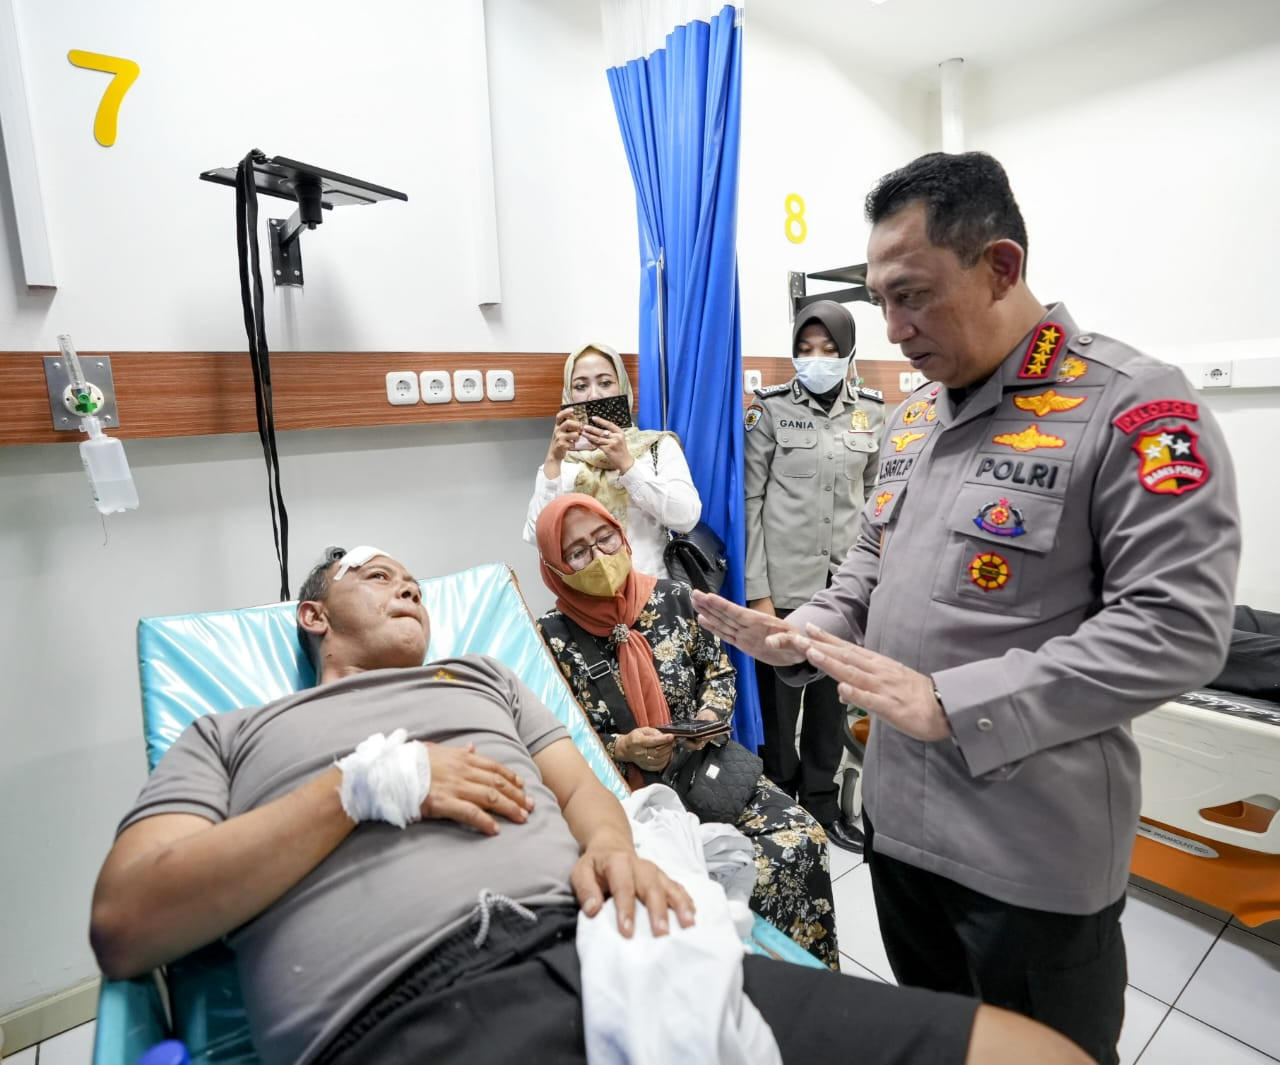 Jenguk Korban, Kapolri Sigit Instruksikan Usut Tuntas Peristiwa Bom Bunuh Diri di Bandung